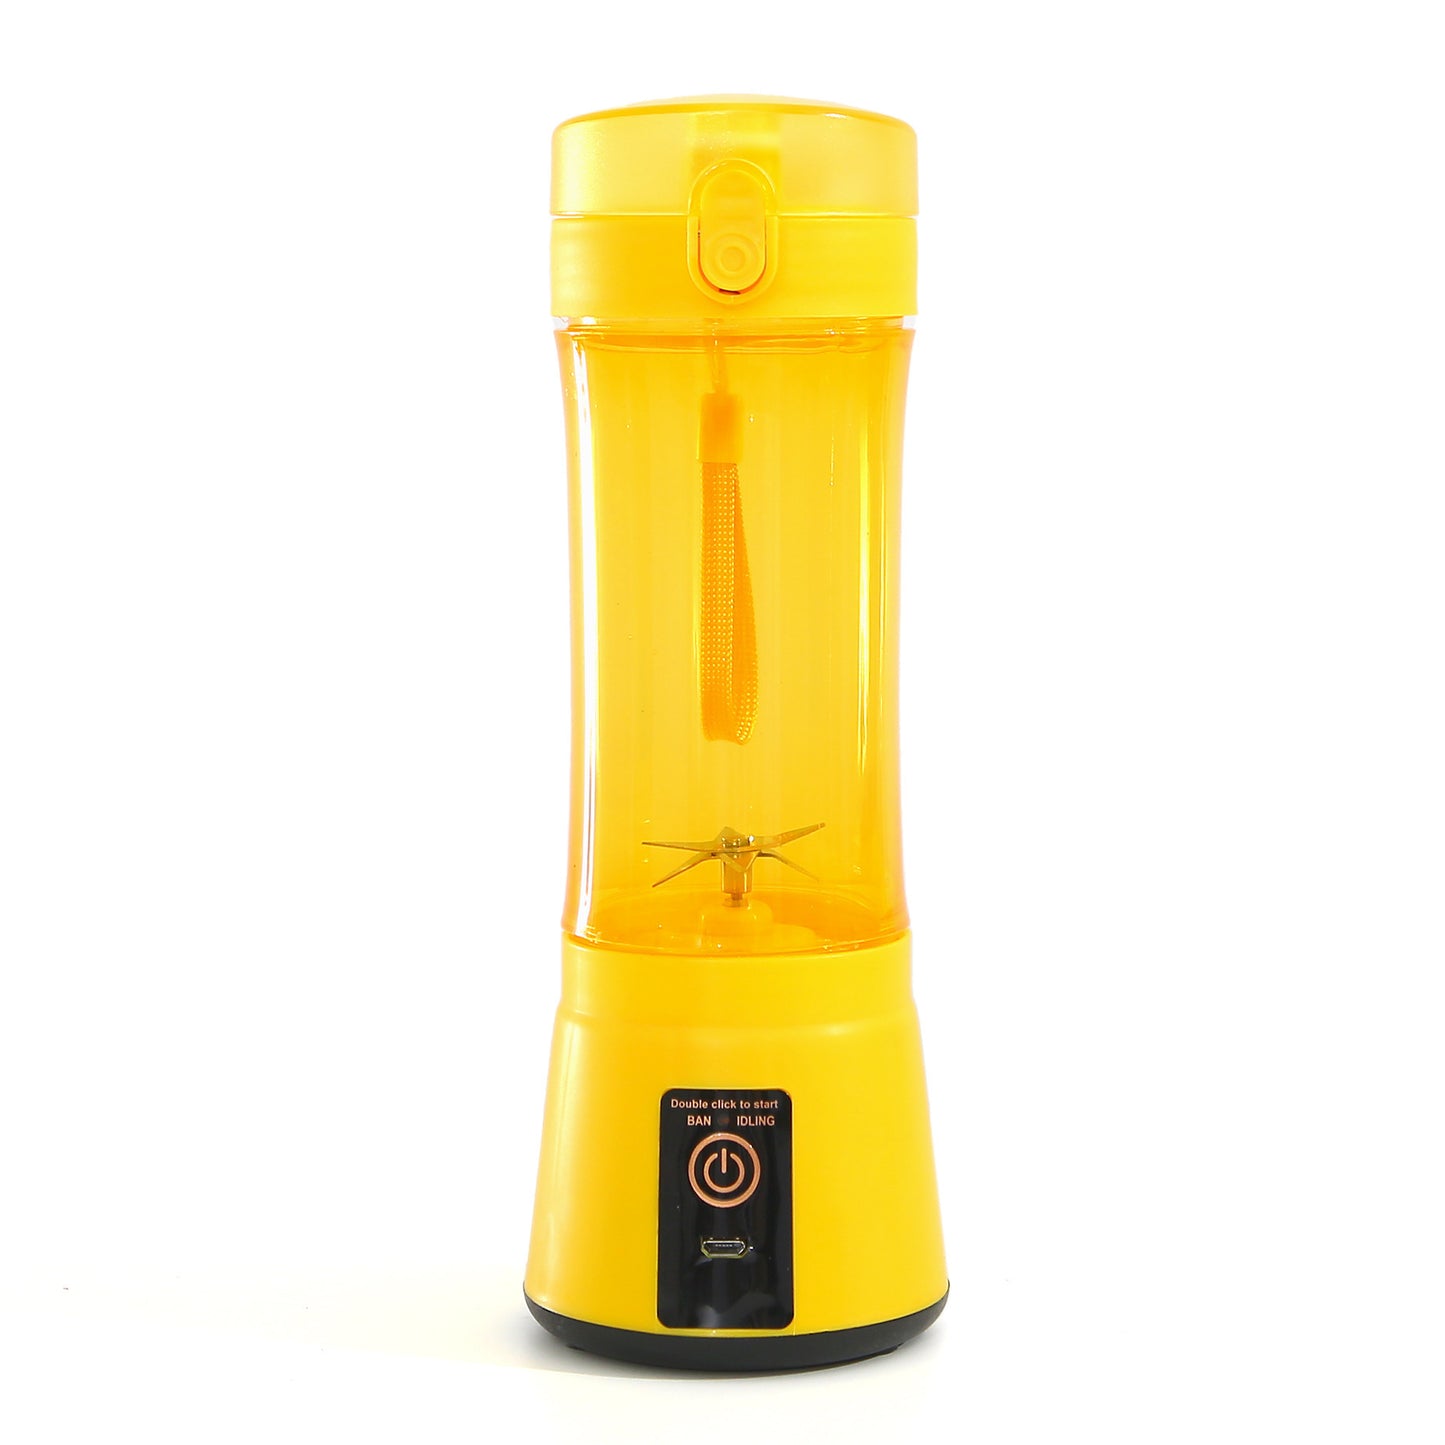 Portable Blender Portable Fruit Electric Juicing Cup Kitchen Gadgets Emporium Discounts Yellow Colour